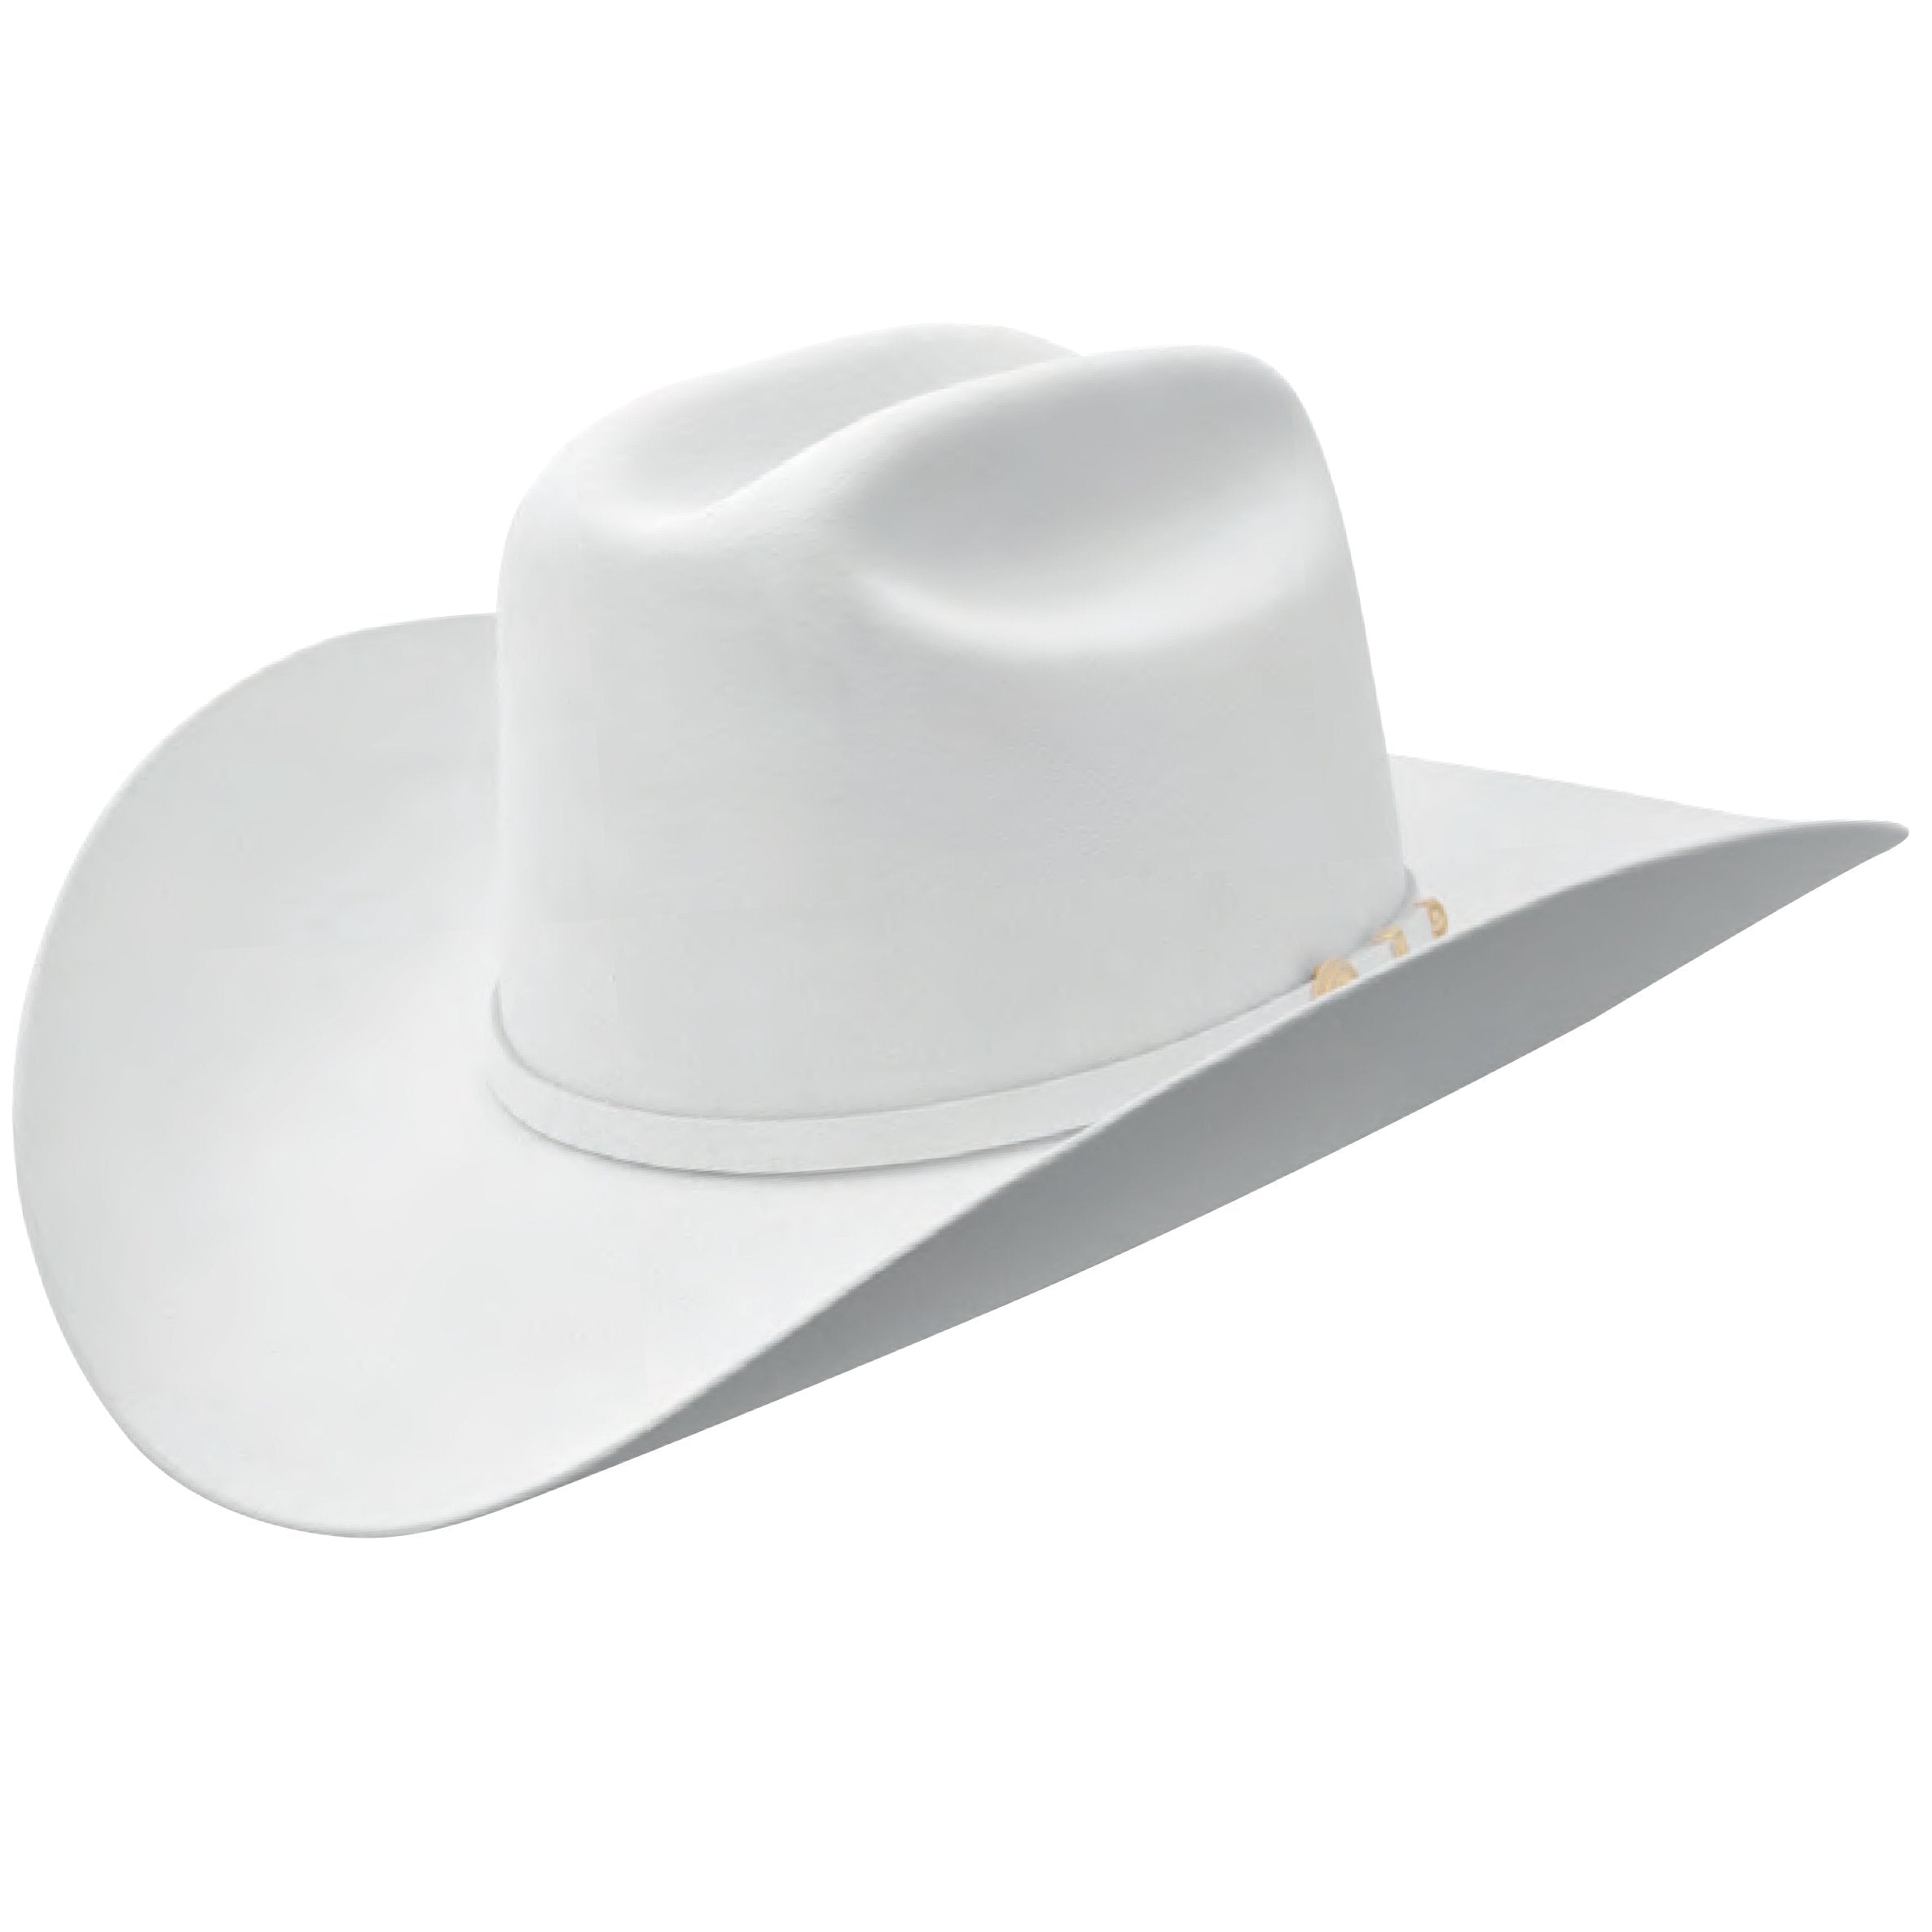 Stetson 100x El Presidente White Felt Cowboy Hat